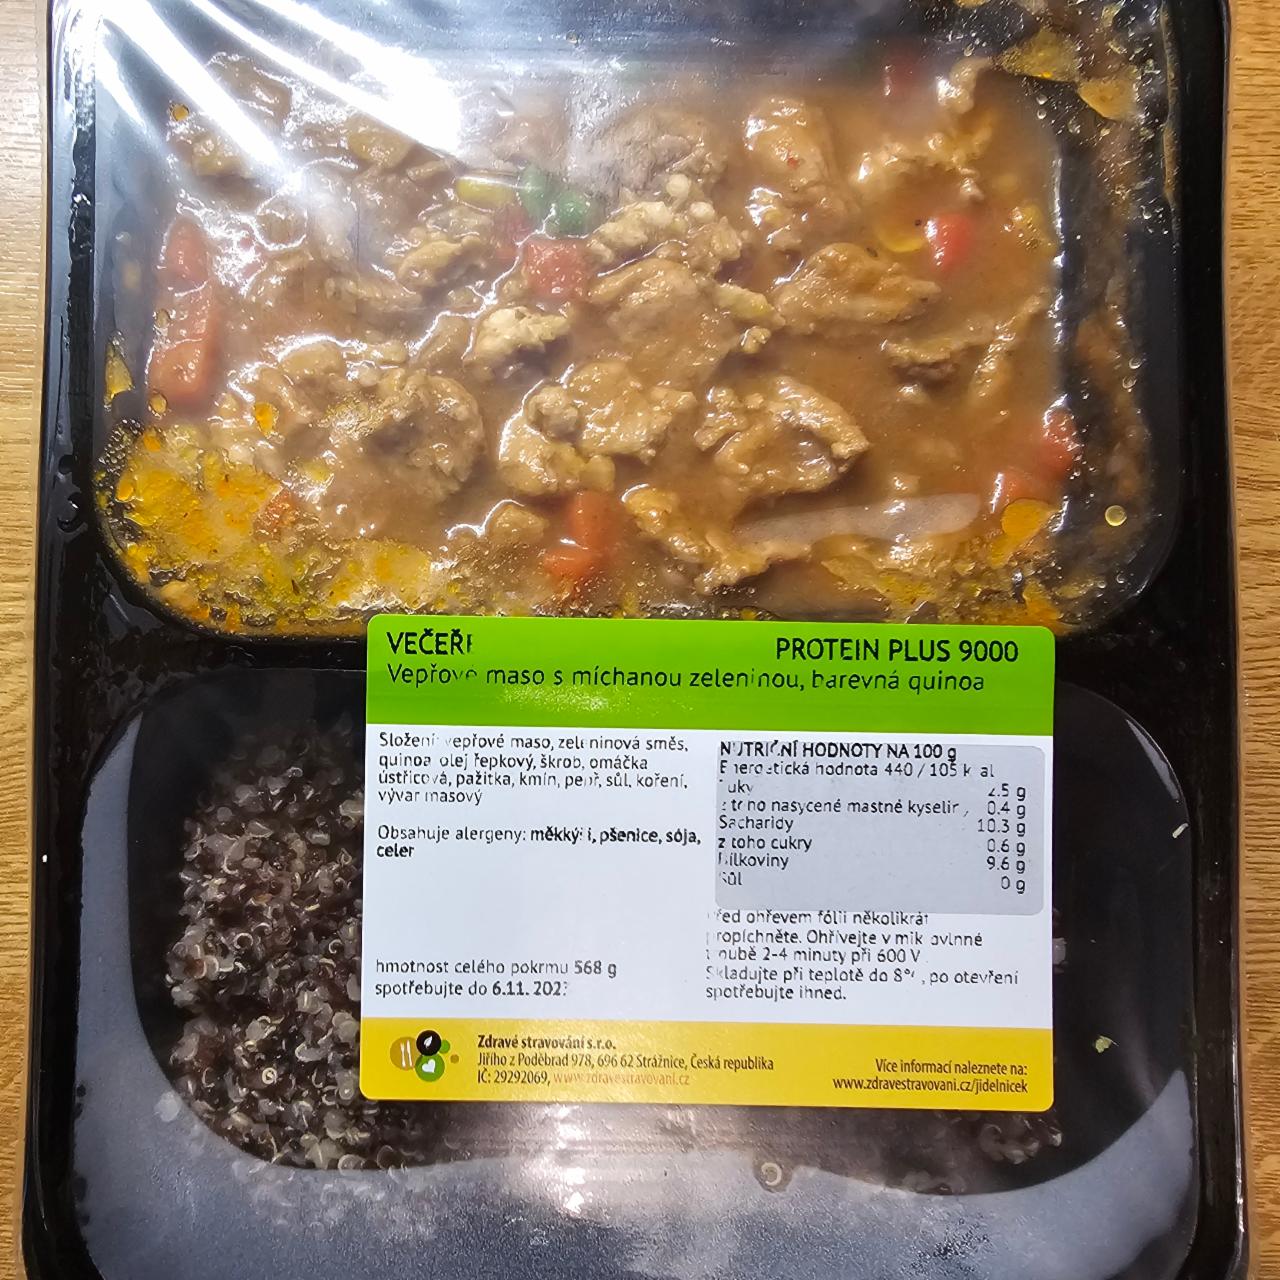 Fotografie - Vepřové maso s míchanou zeleninou, barevná quinoa, zdravé stravování, PROTEIN PLUS 9000